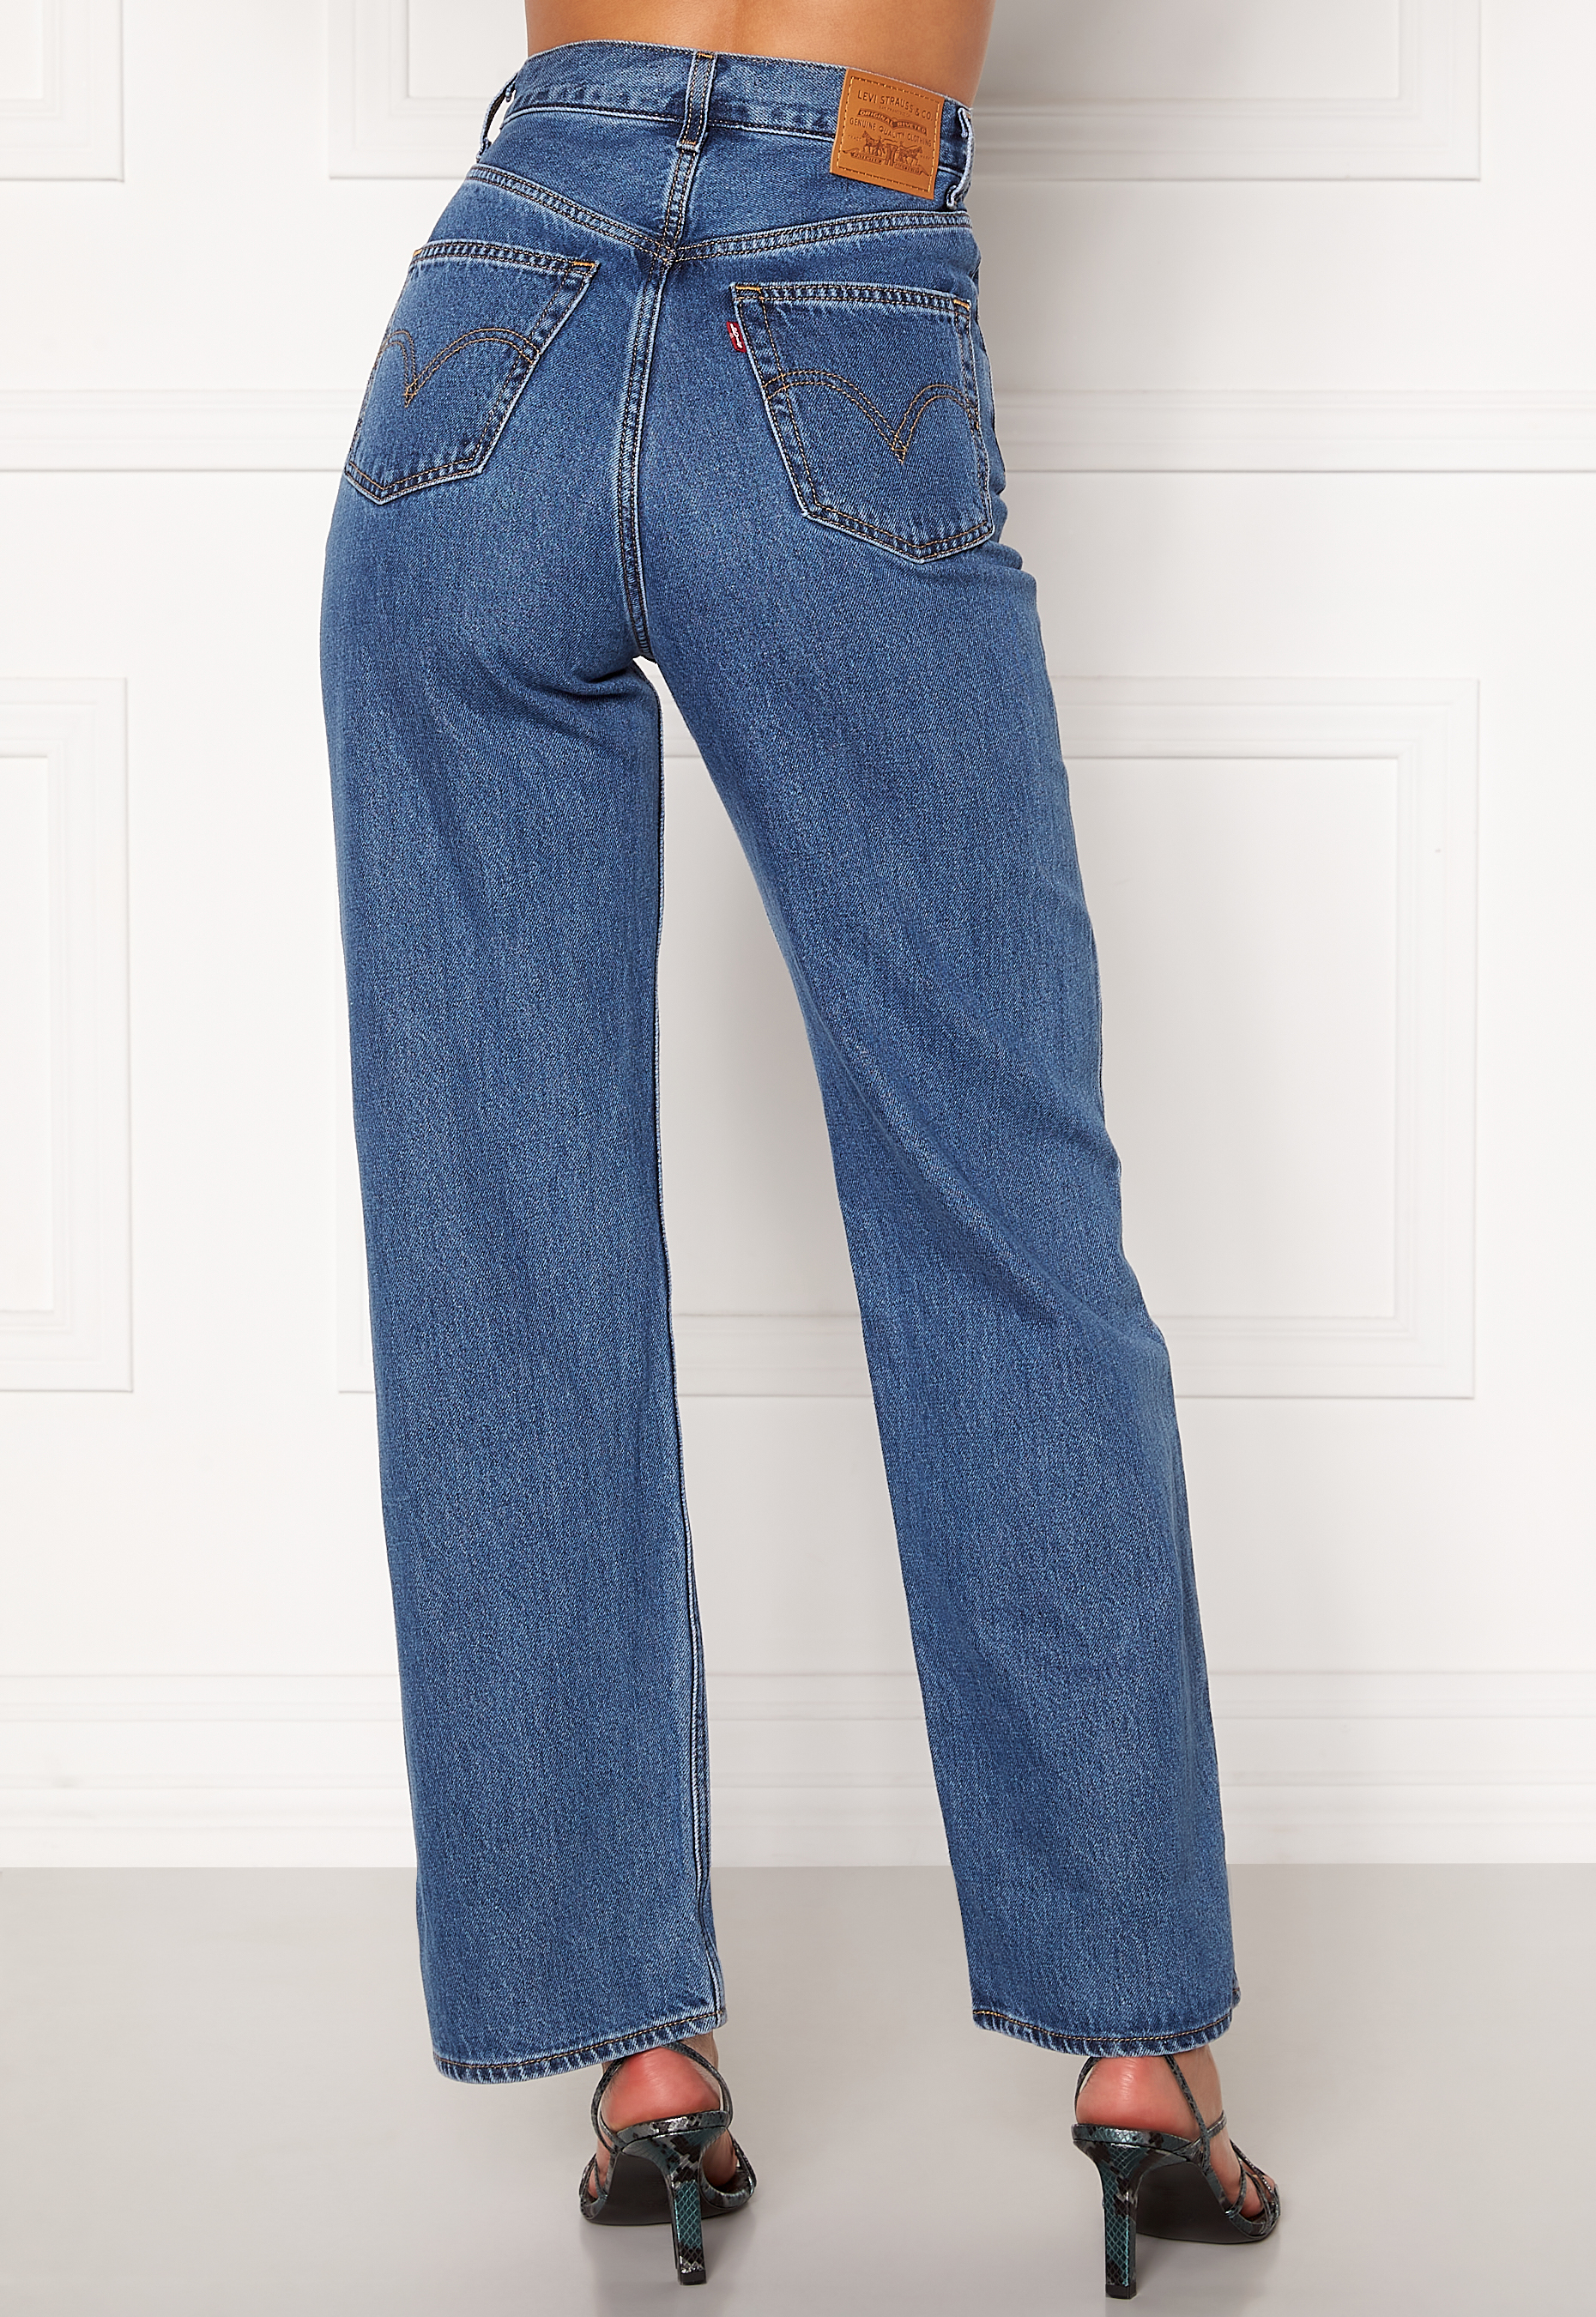 levis expandable waist jeans